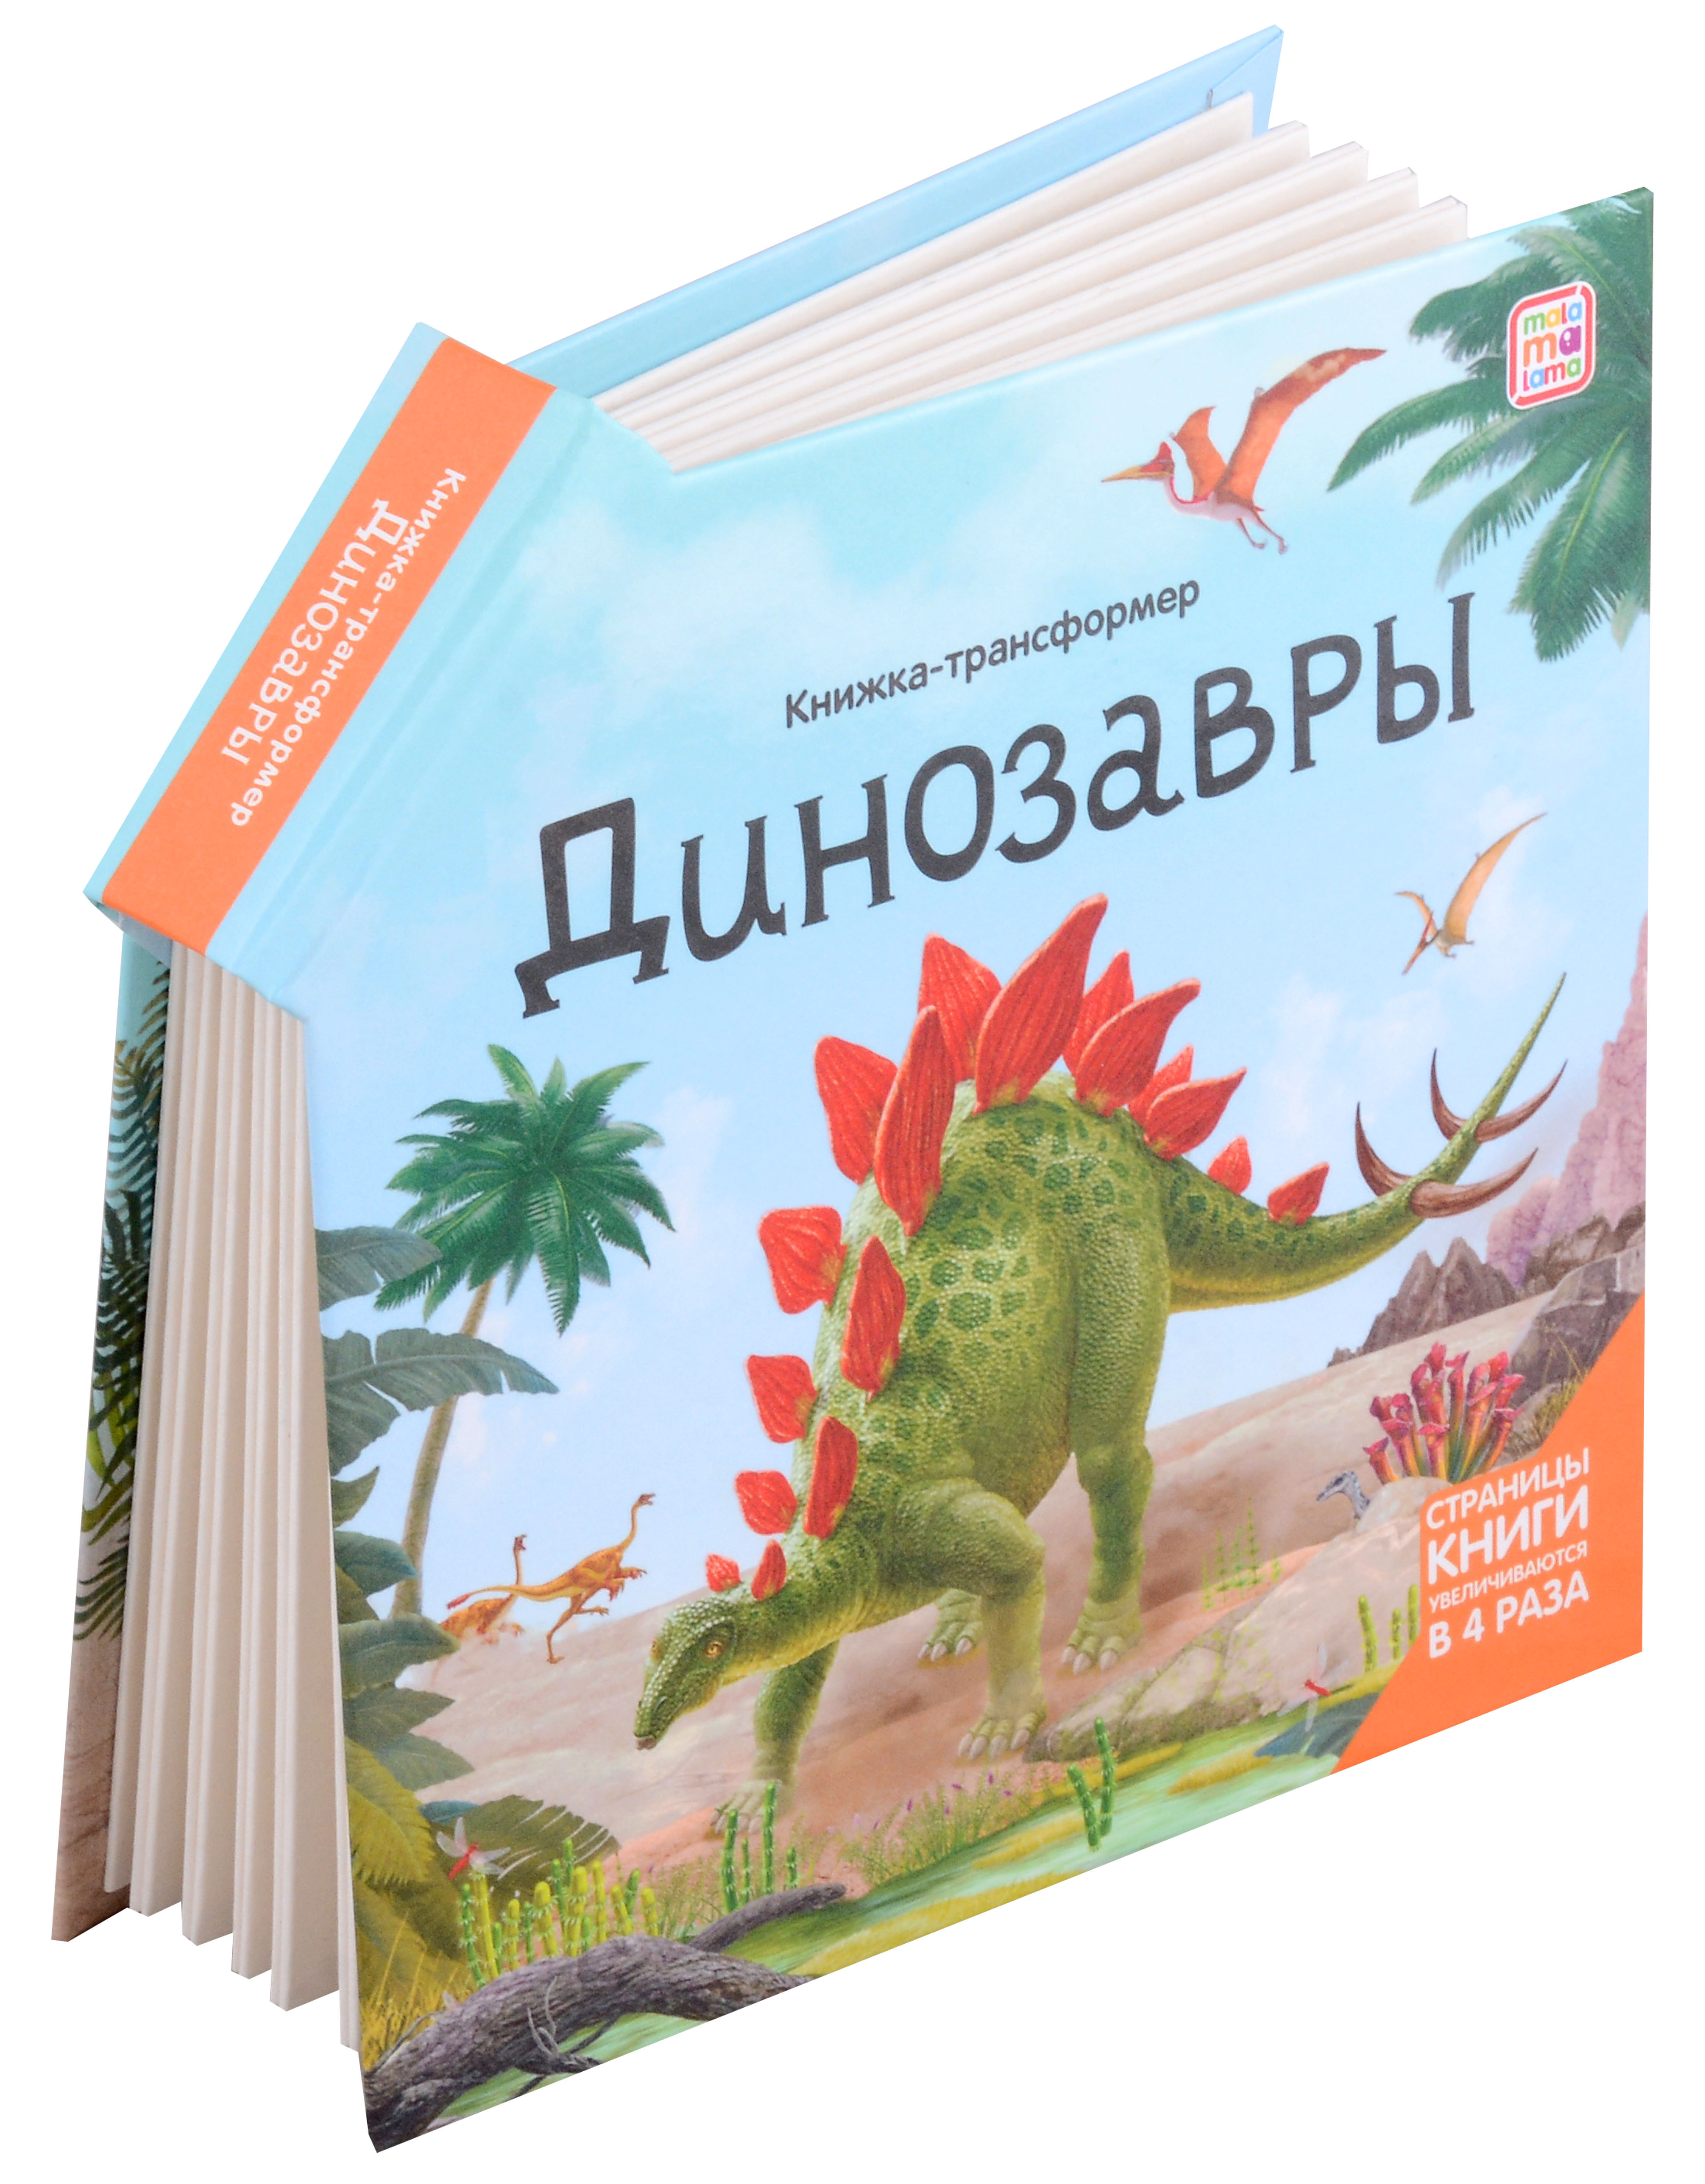 Динозавры : книжка-трансформер green jen динозавры энциклопедия со стереоиллюстрациями постер трансформер